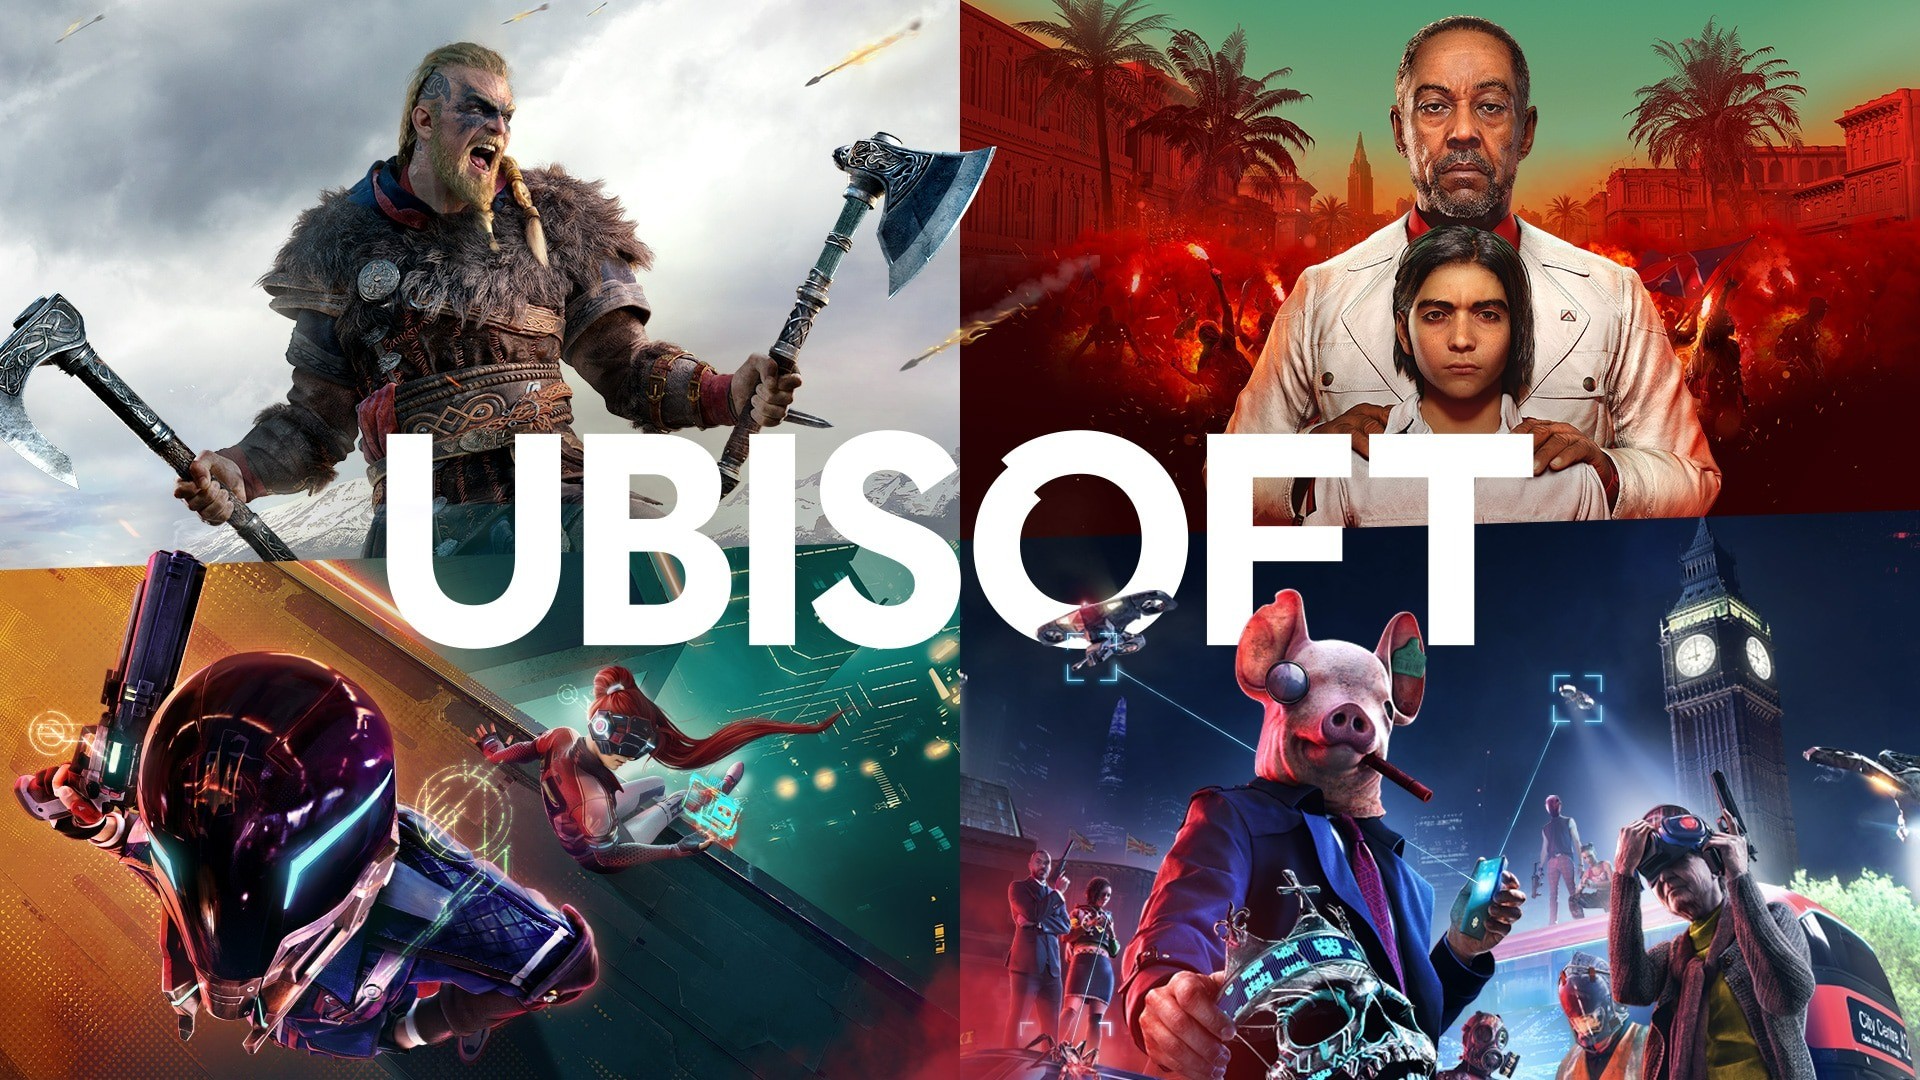 Far Cry 6 e mais três jogos da Ubisoft serão lançados em breve na Steam